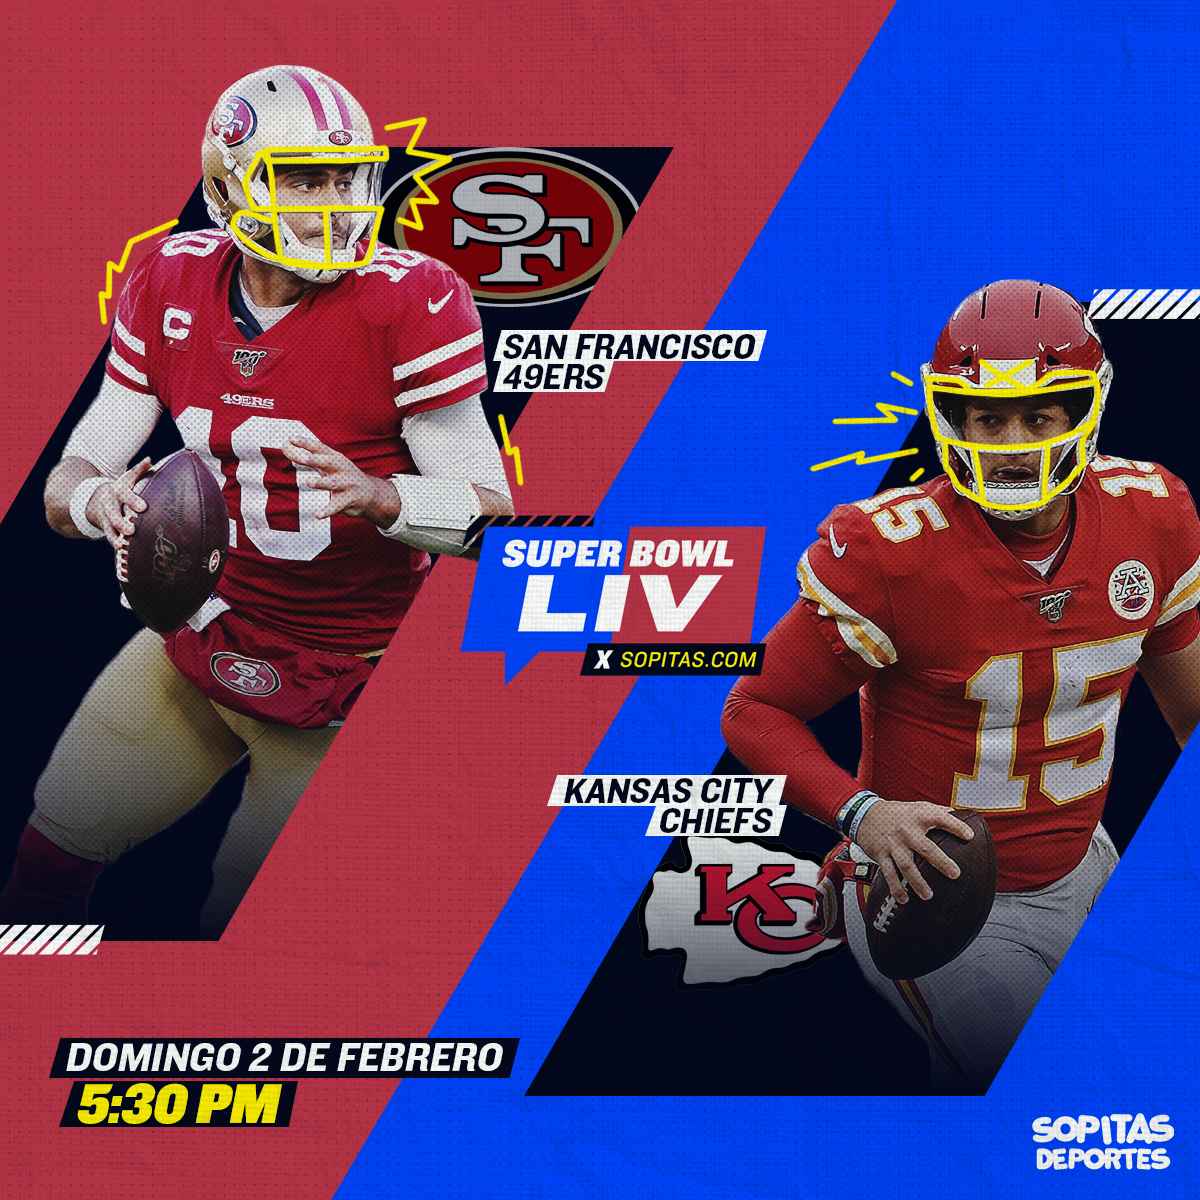 ¿Cómo, cuándo y dónde ver EN VIVO el 49ers vs Chiefs del Super Bowl LIV?